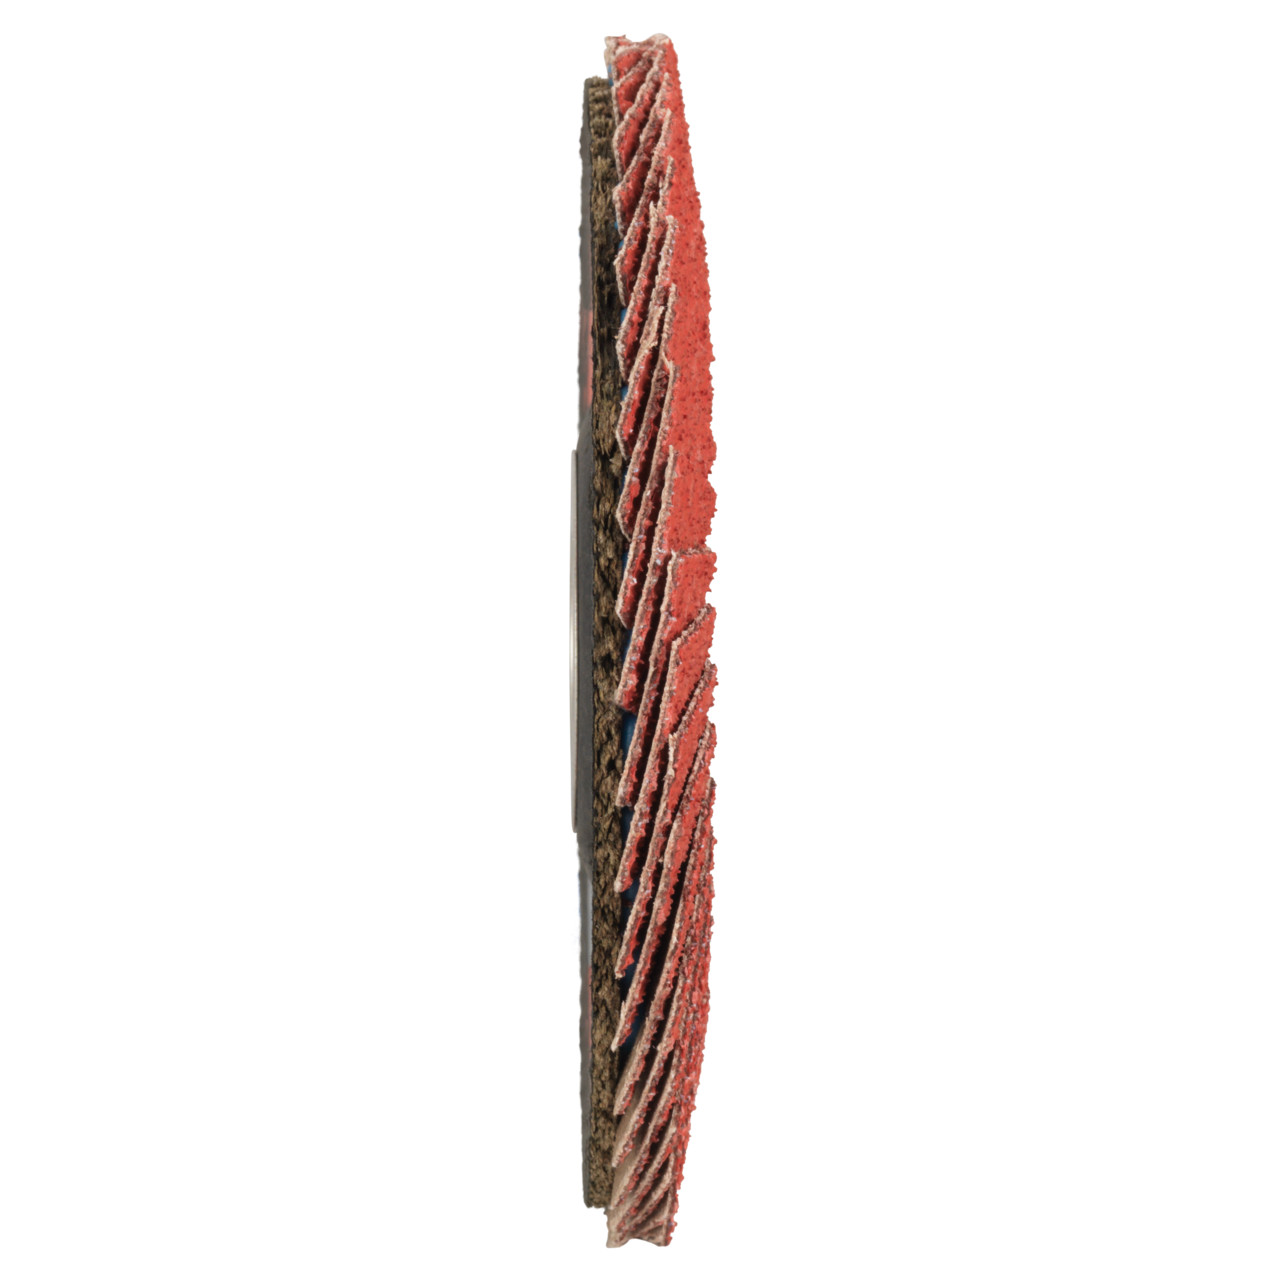 Tyrolit Getande borgring DxH 125x22,23 CERAMIC voor roestvrij staal, P80, vorm: 27A - slingerontwerp (glasvezeldragerhuisontwerp), Art. 34166671